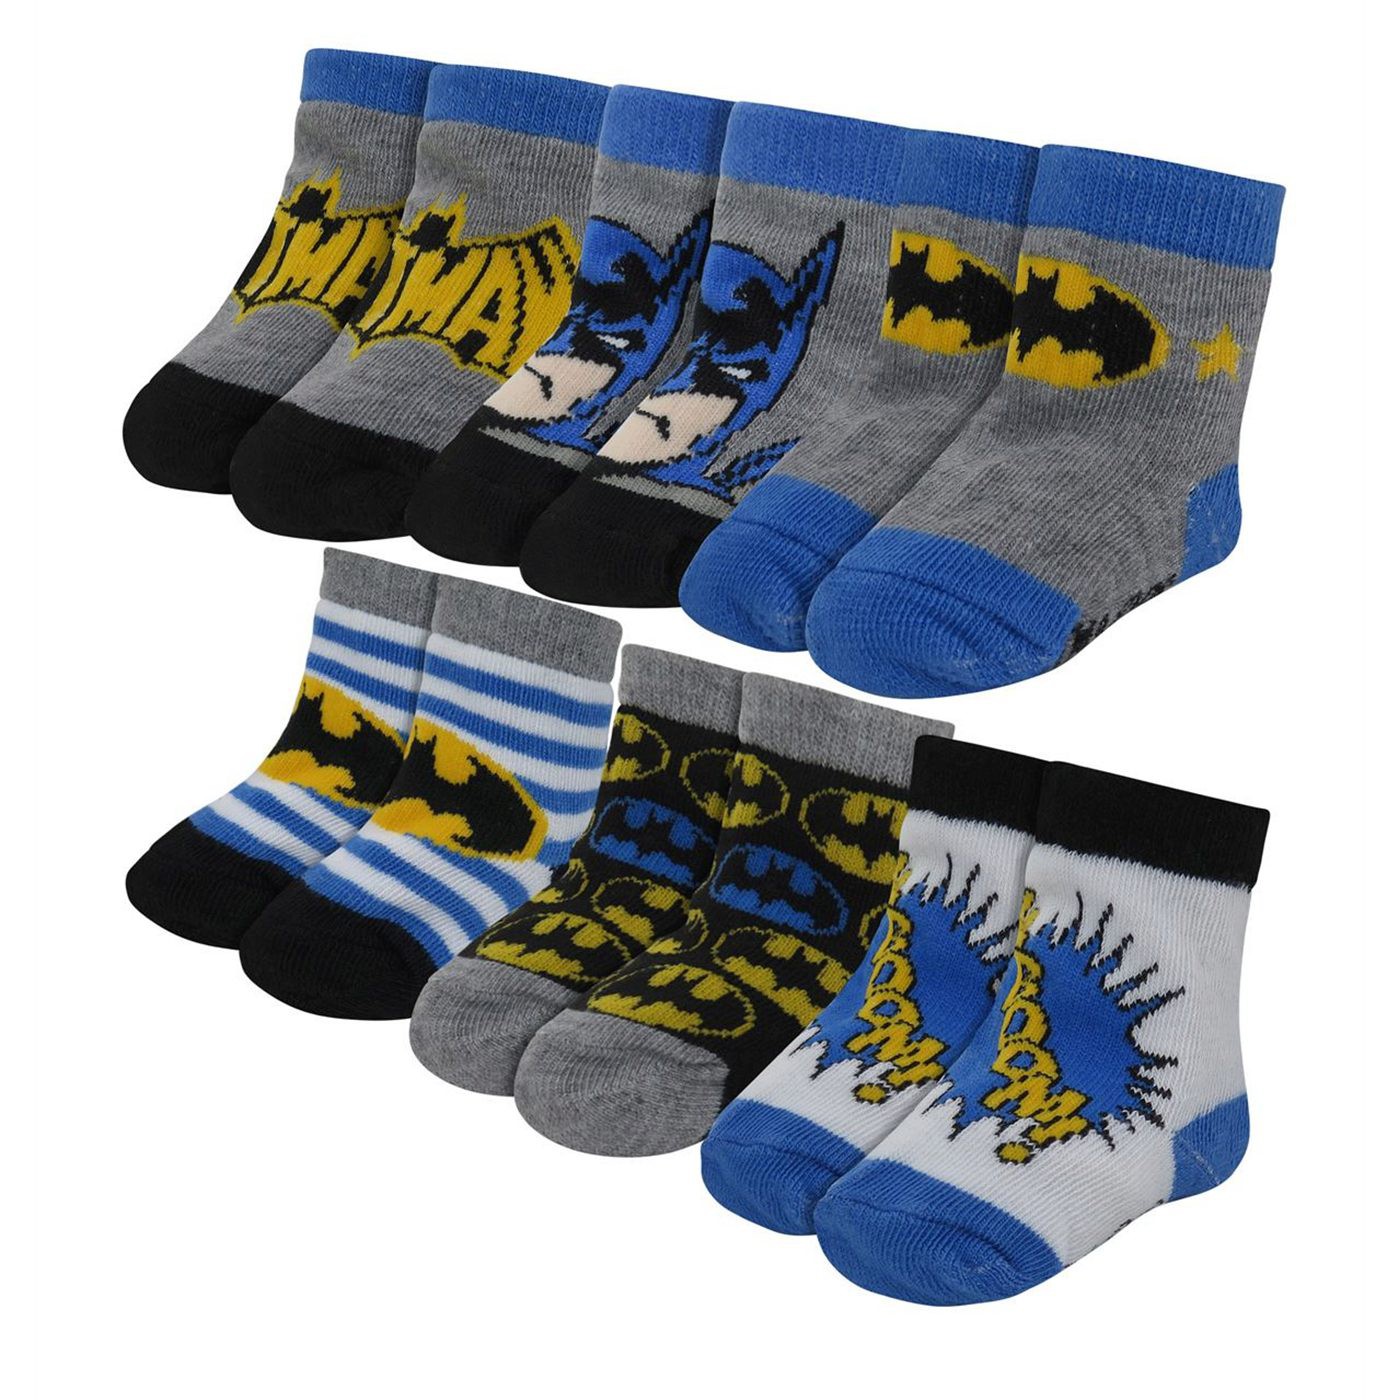 Batman Classic Infant Socks 6-Pack